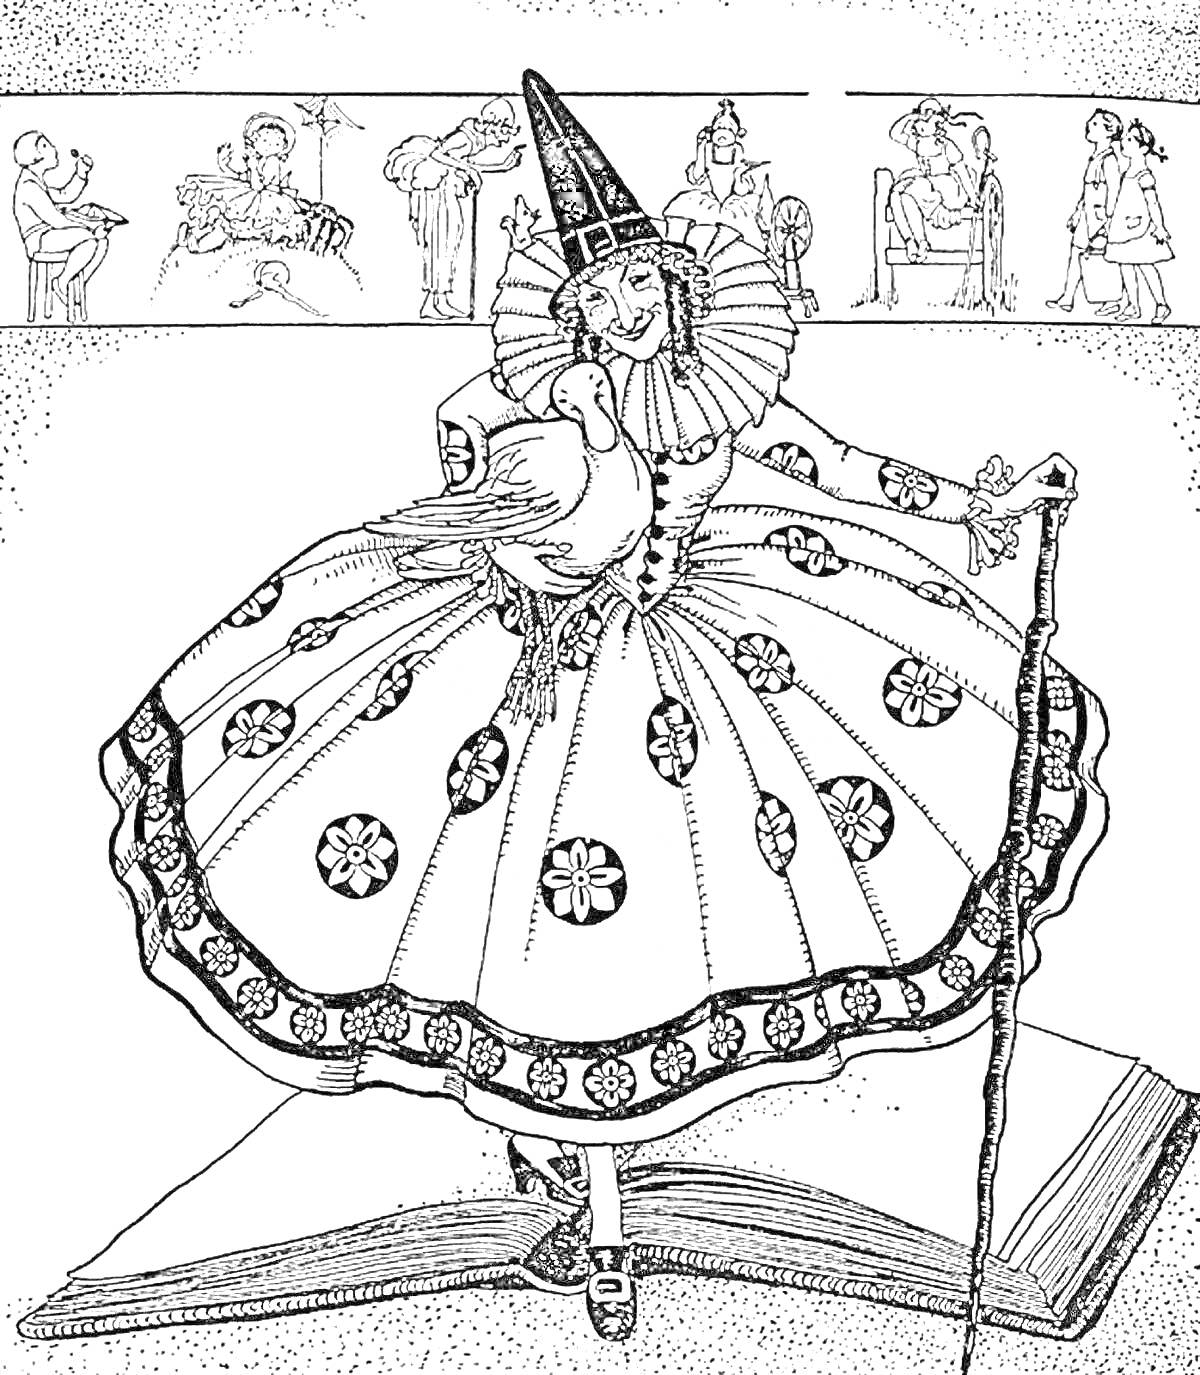 РаскраскаТеатральный костюм ведьмы с пуффом, шляпой и посохом, большая книга